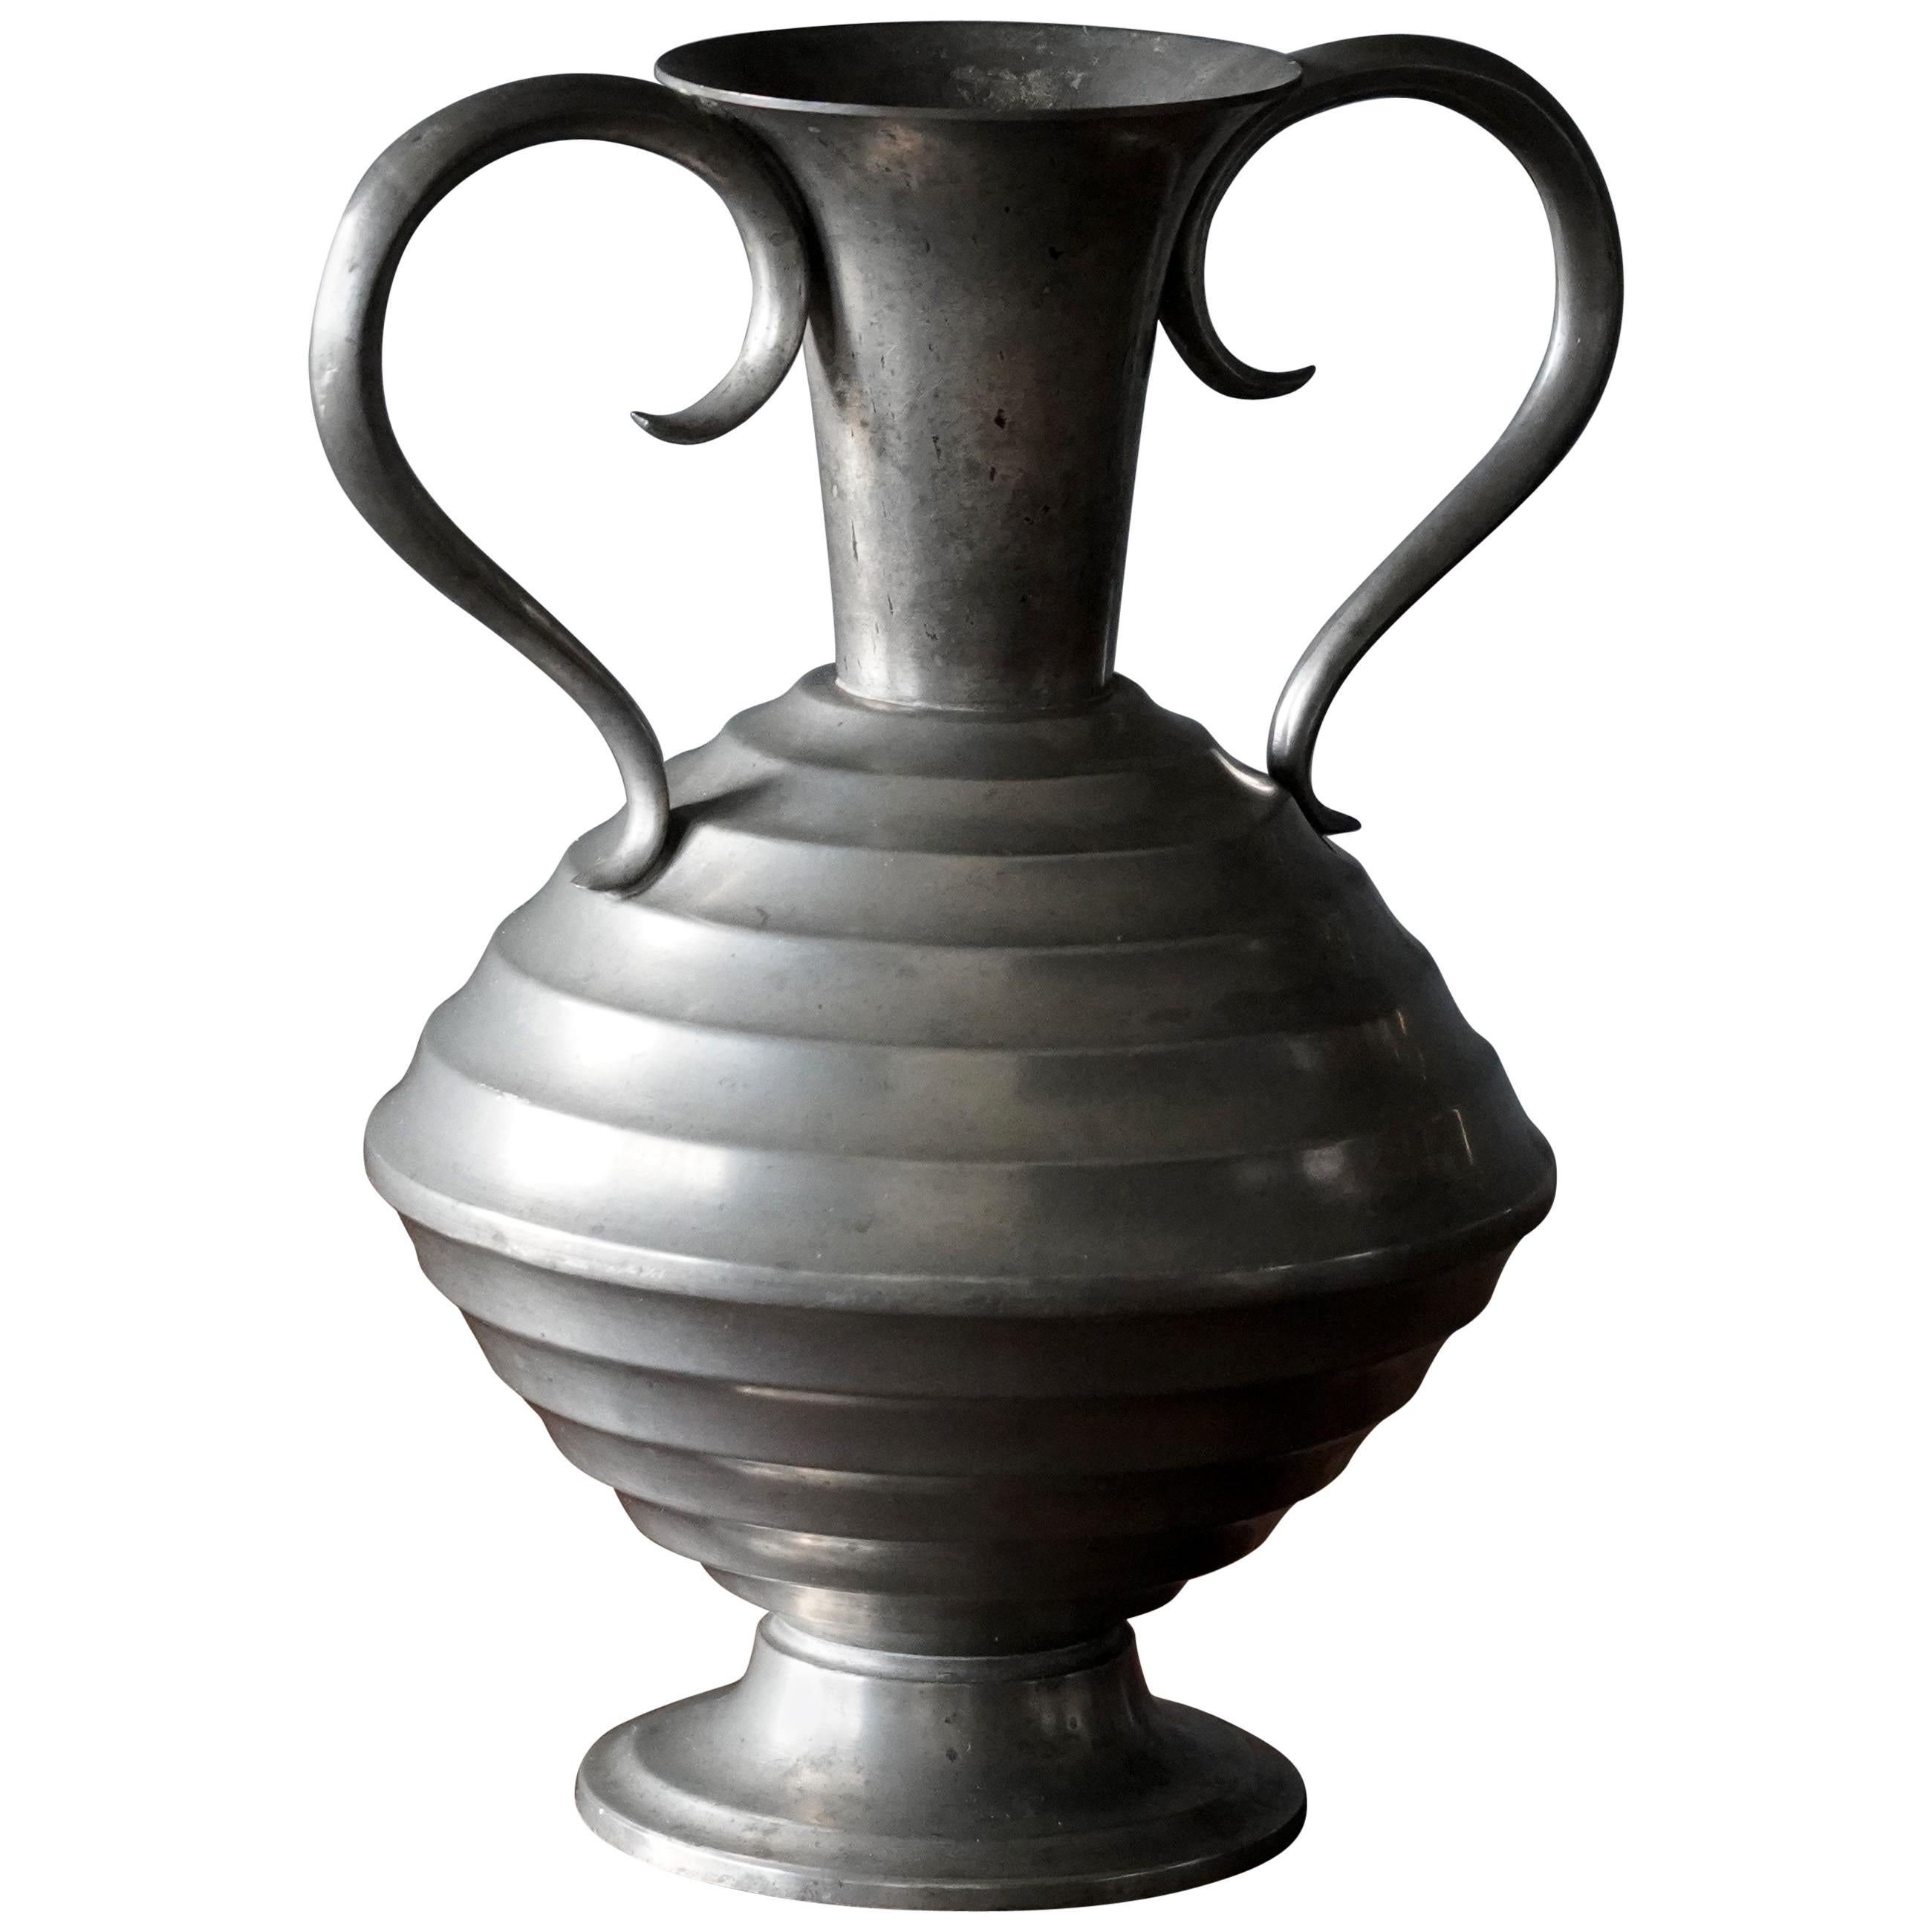 C.G. Hallberg, Modernist Vase, Pewter, Sweden, 1936